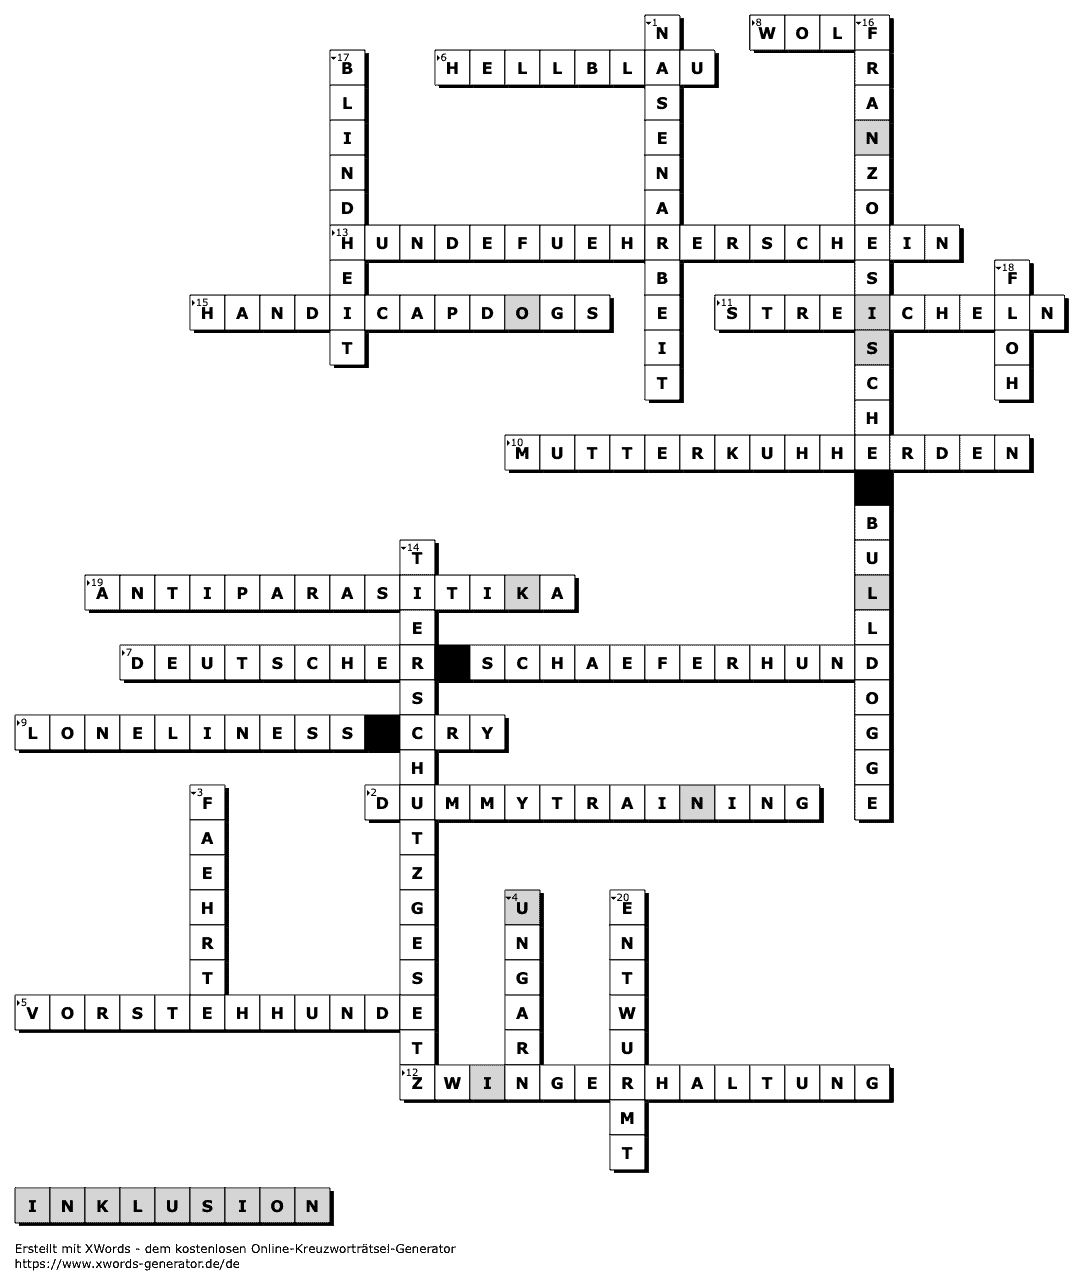 Abbildung zeigt die Auflösung eines Kreuzworträtsels. 